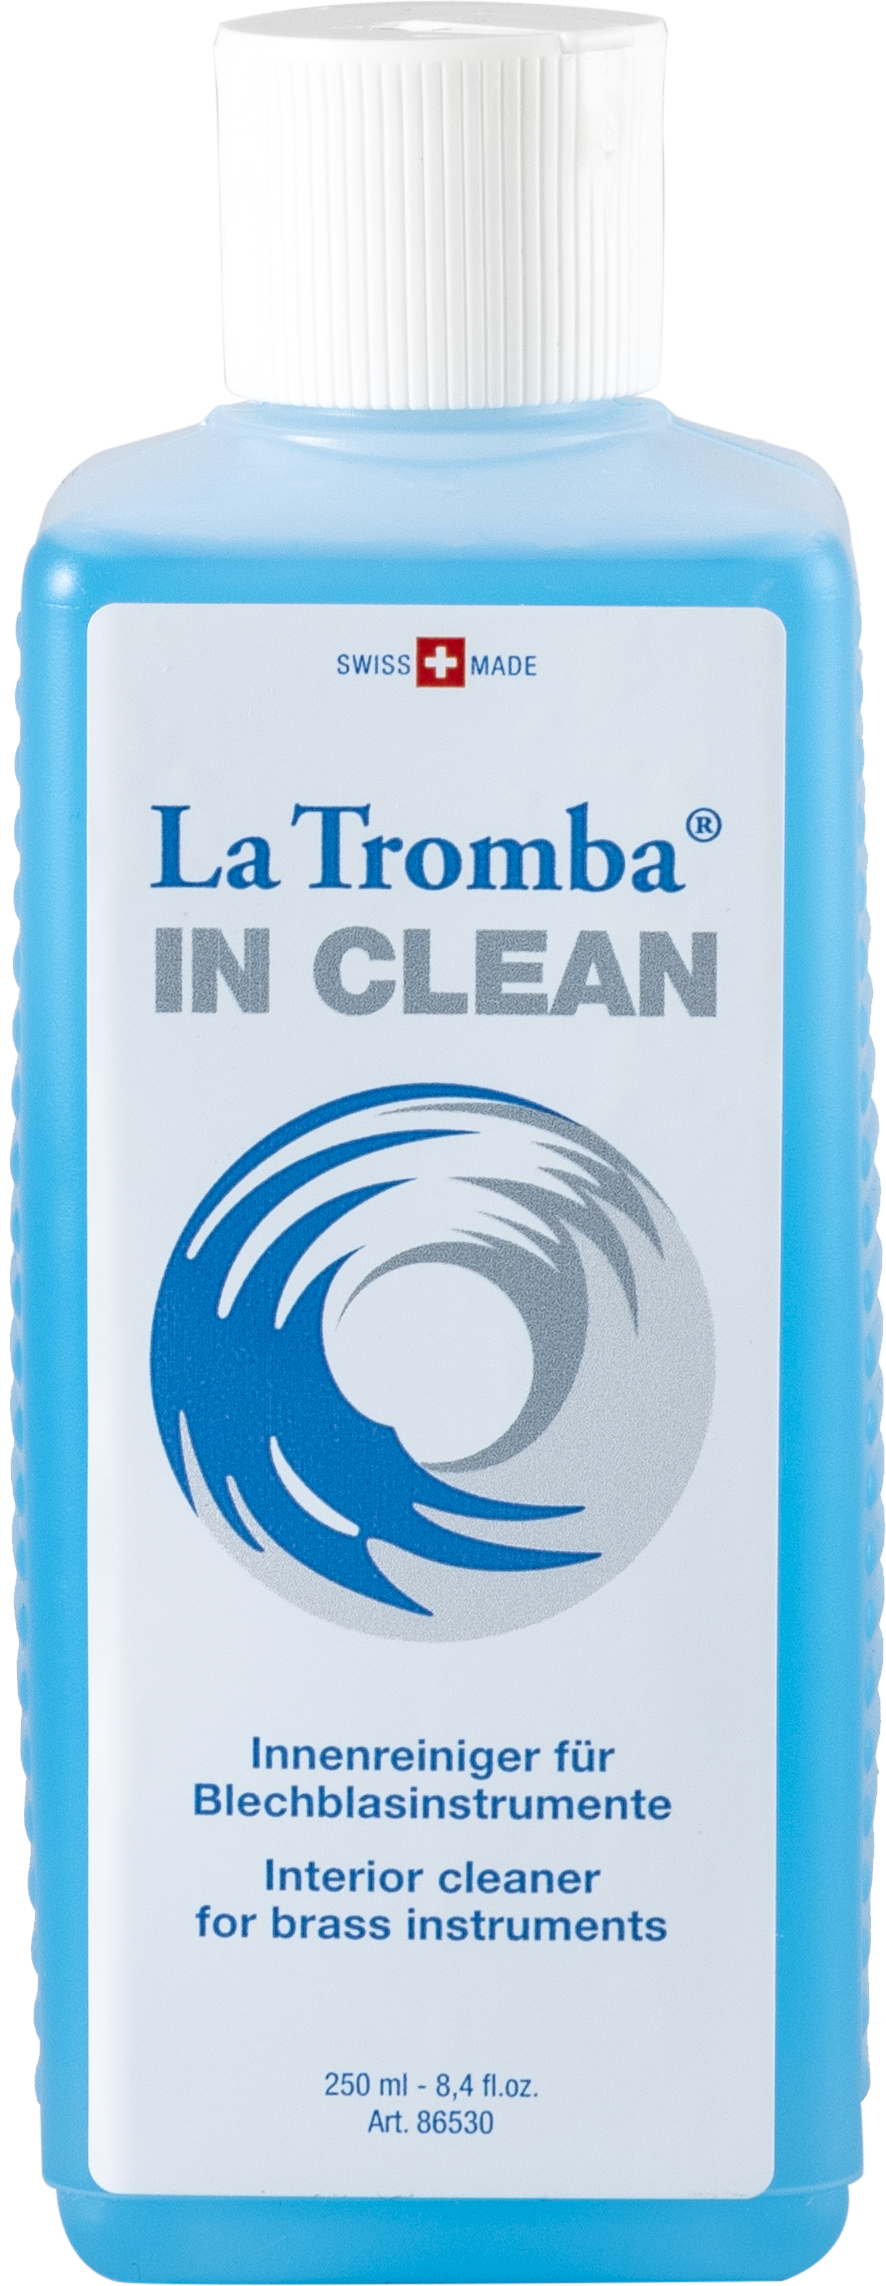 La Tromba In Clean 250ml